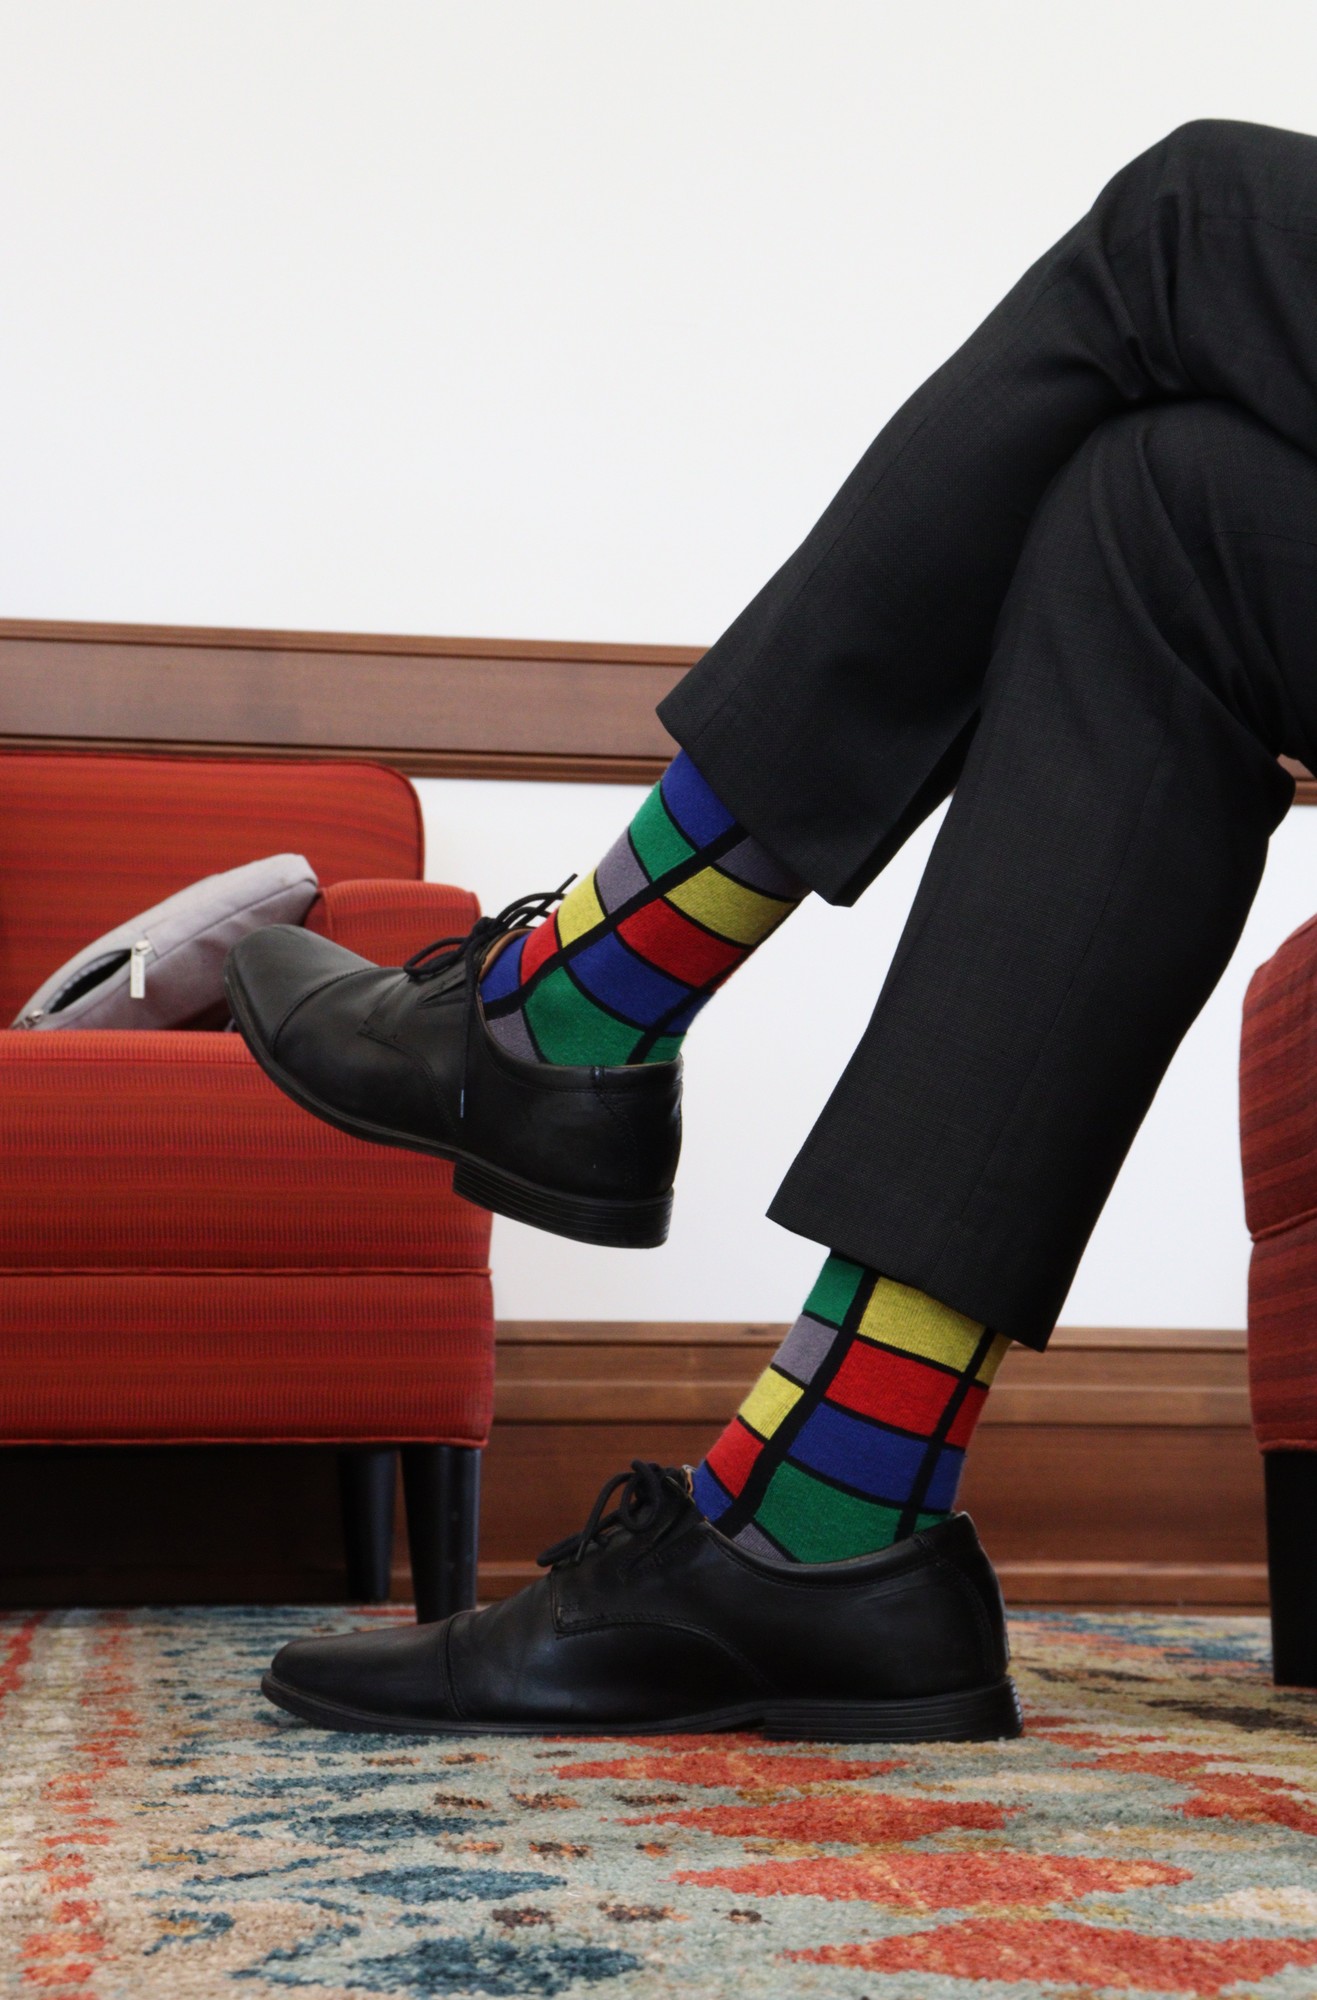 President Koppell wearing Rubix Cube socks. Koppell says fun socks make his days more interesting, and loves seeing students wearing interesting socks. John LaRosa